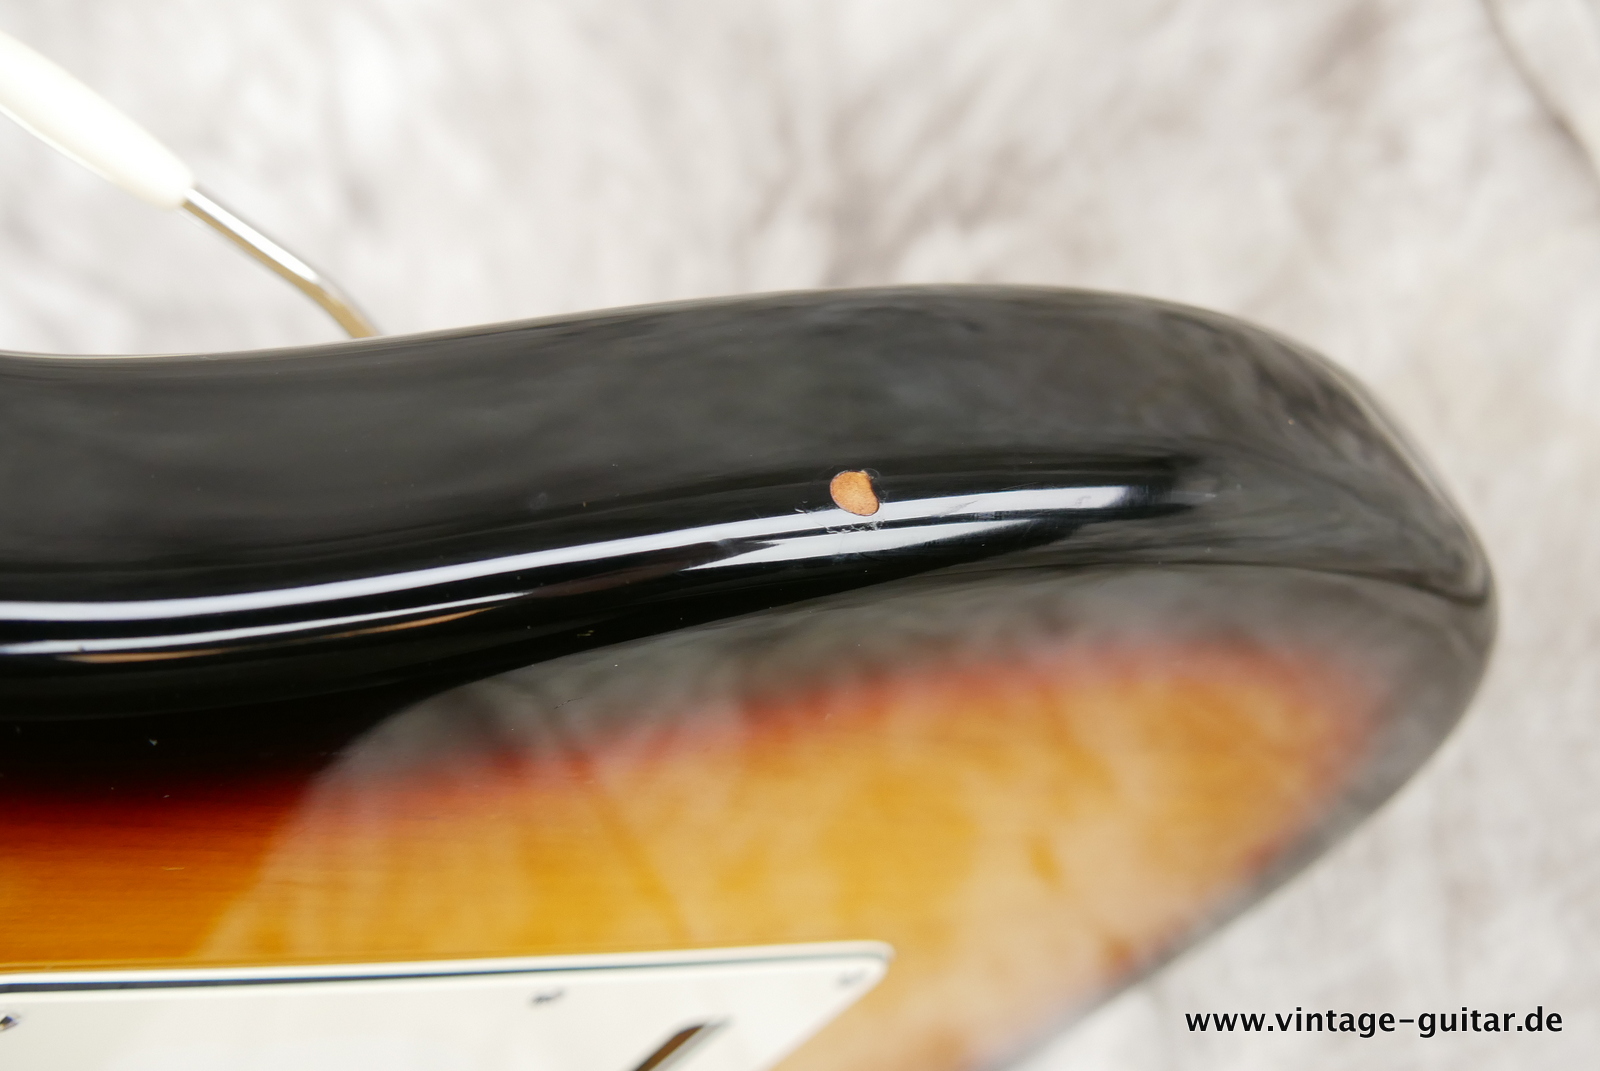 Fender_Stratocaster_American_Series_Diamond_Anniversary_60th_Left_handed_USA_sunburst-017.JPG